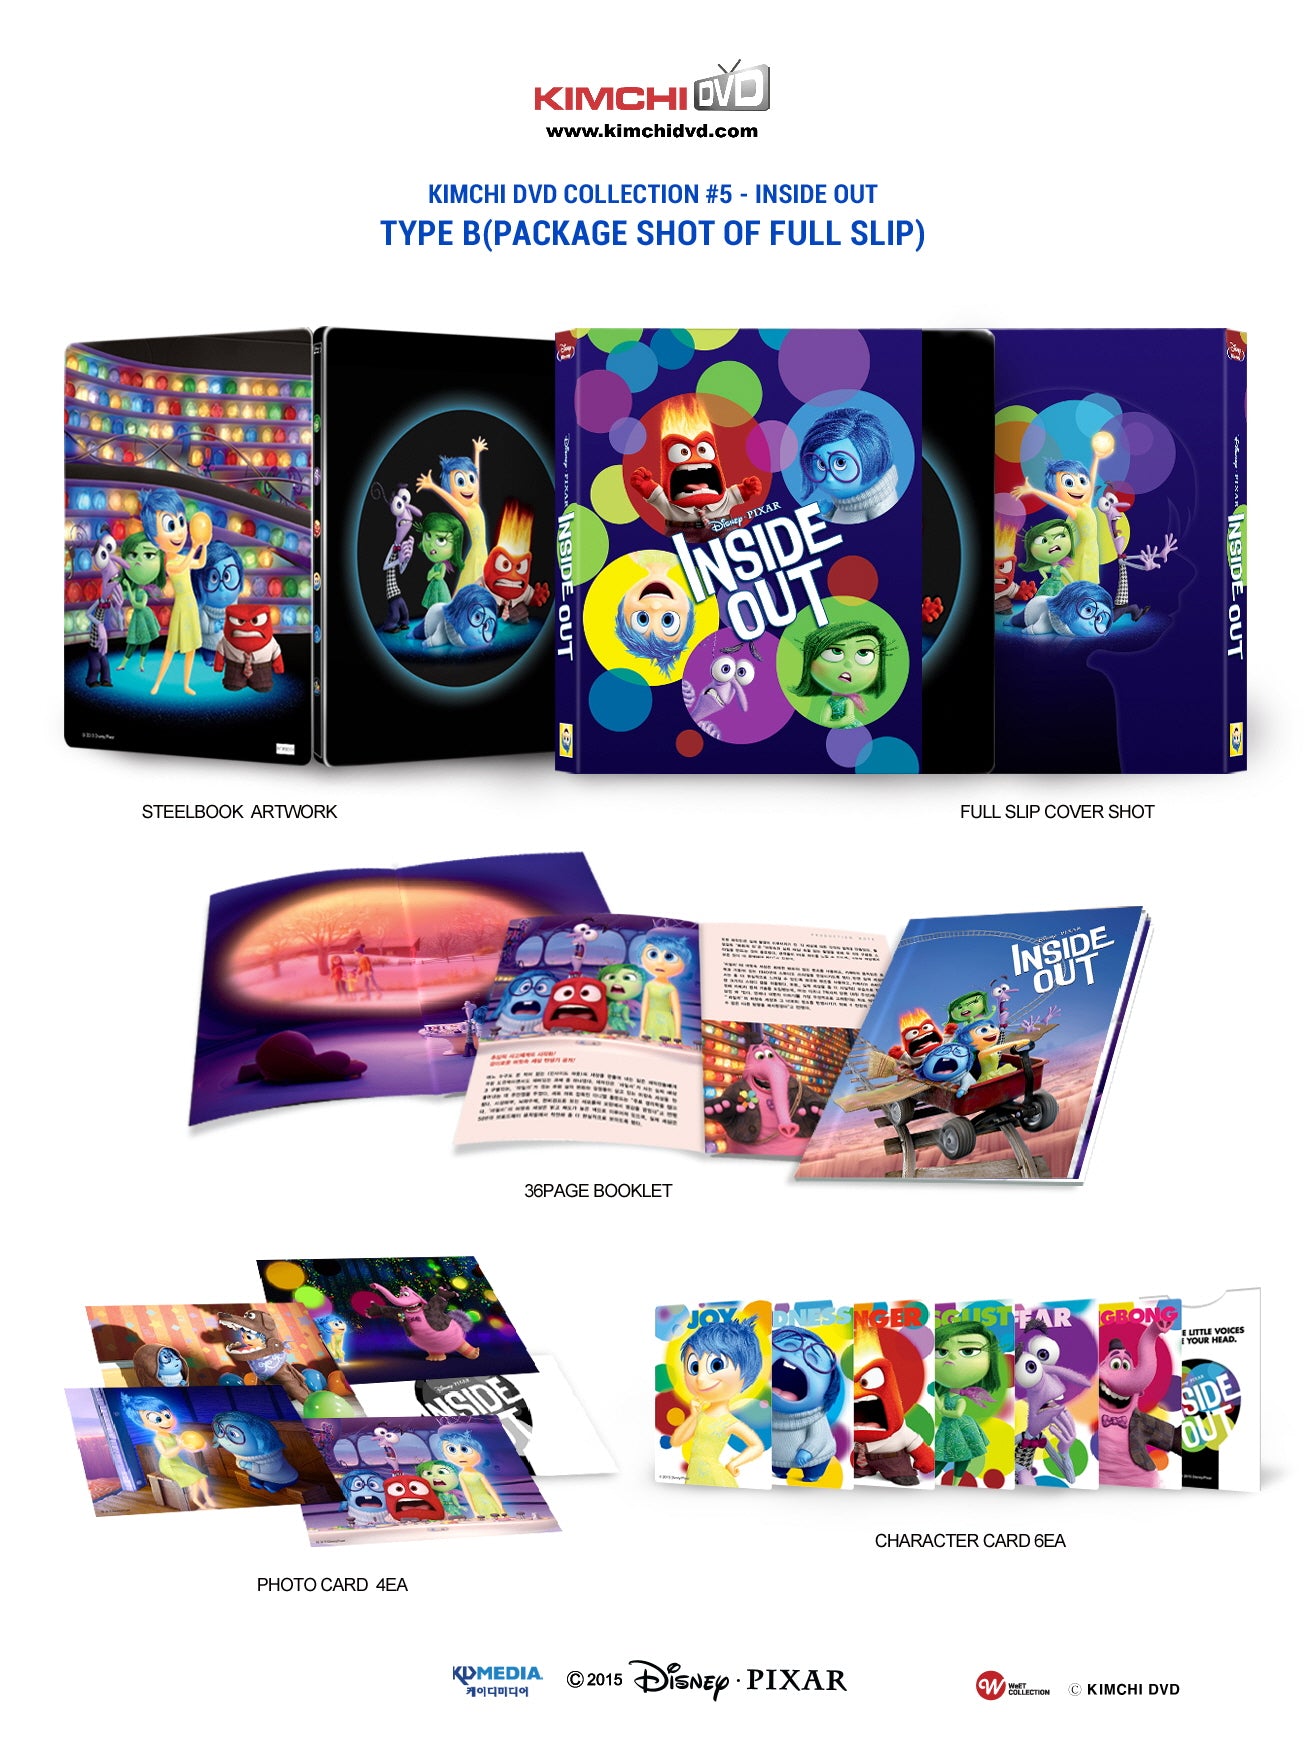 Inside Out 3D Full Slip B SteelBook (KimchiDVD #005)(Korea)